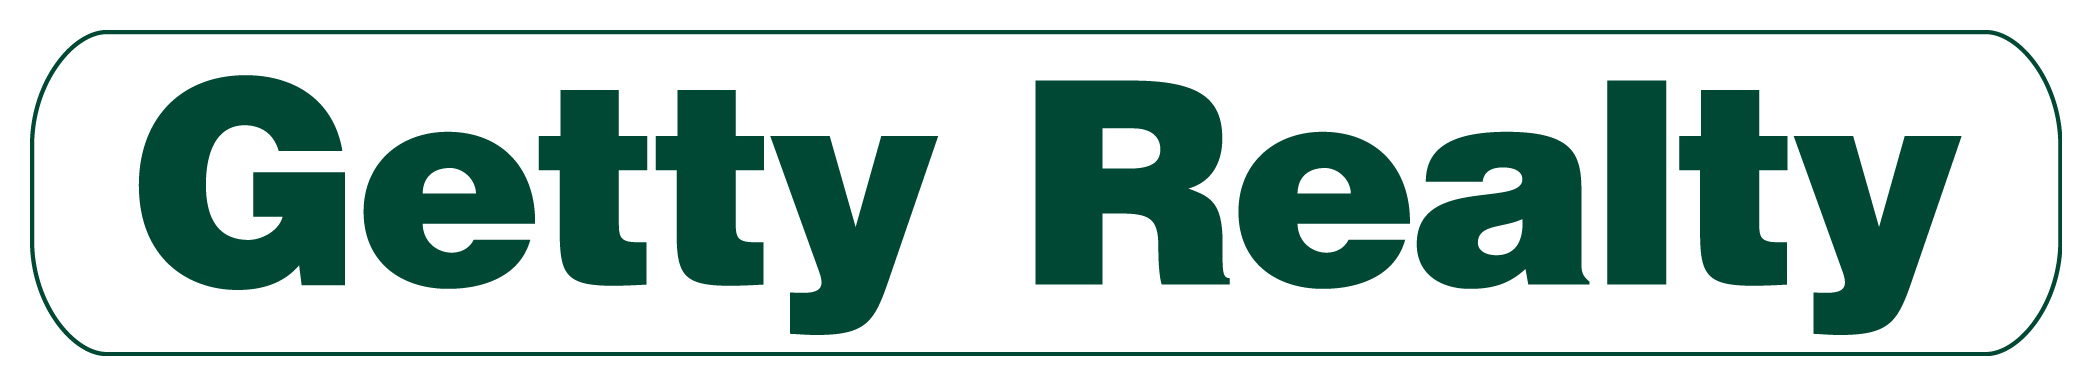 Getty Realty Corp. Company Logo